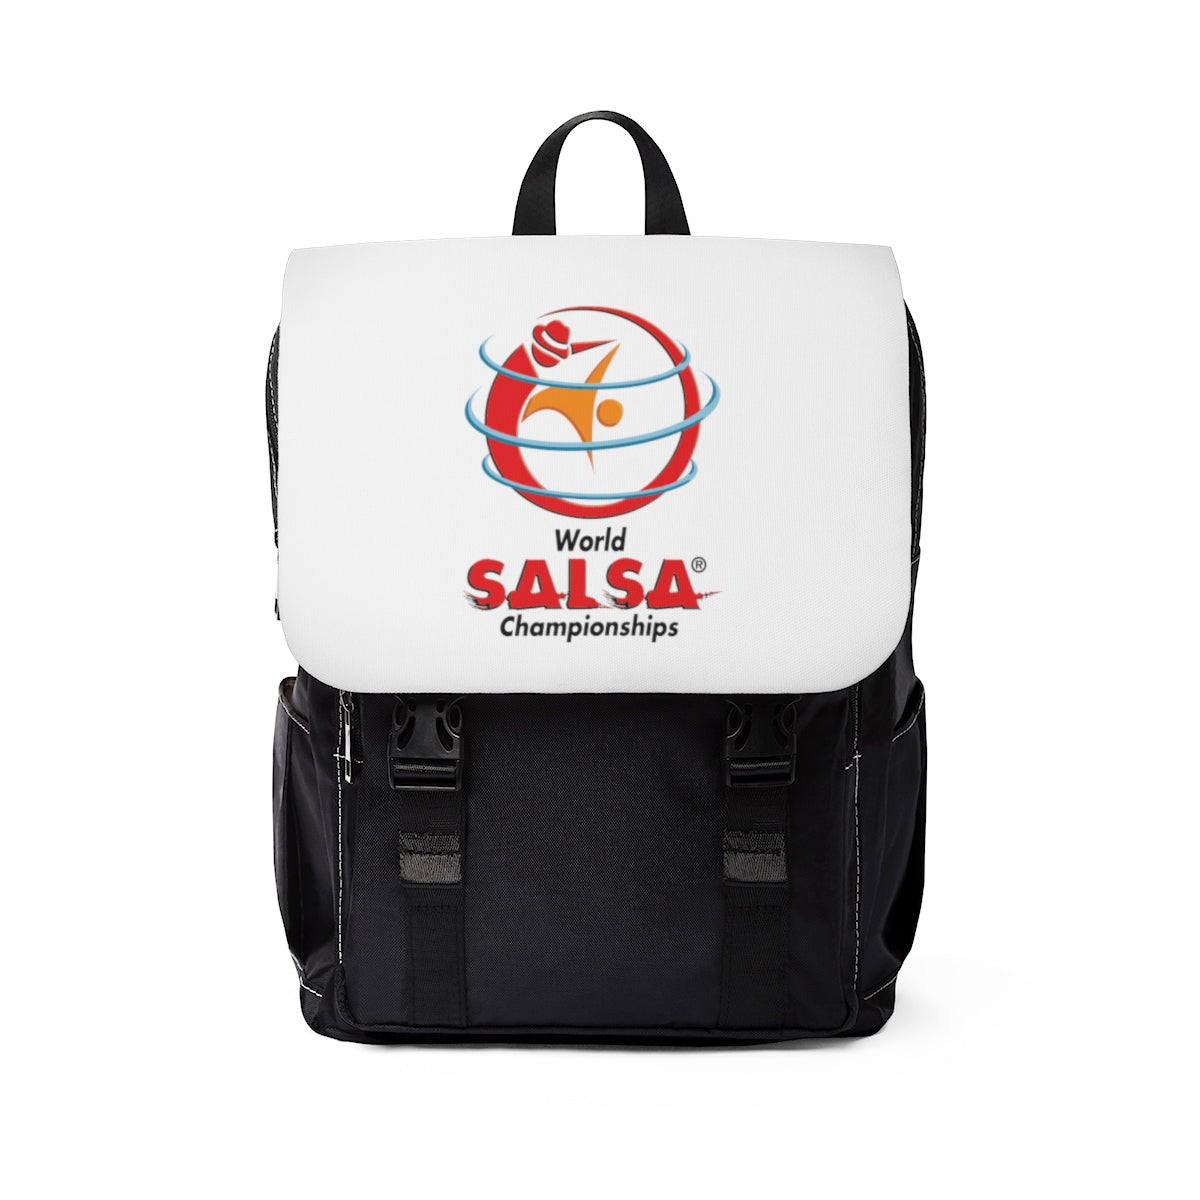 Unisex Casual Shoulder Backpack - World Salsa Championships